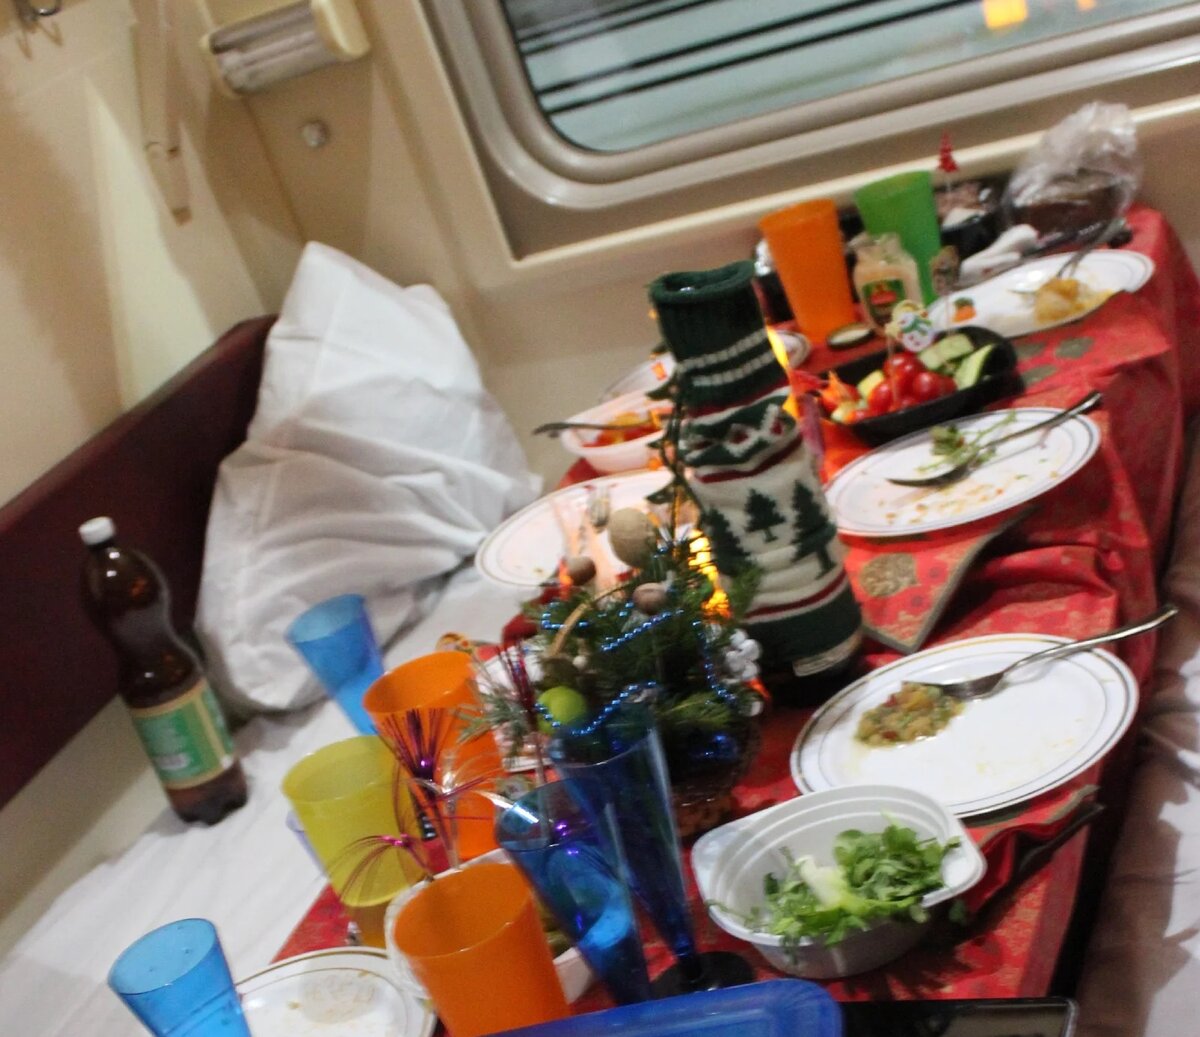 Поезд вагон еда. Стол в поезде. Новогодний стол в поезде. Стол в поезде с едой. Застолье в поезде.